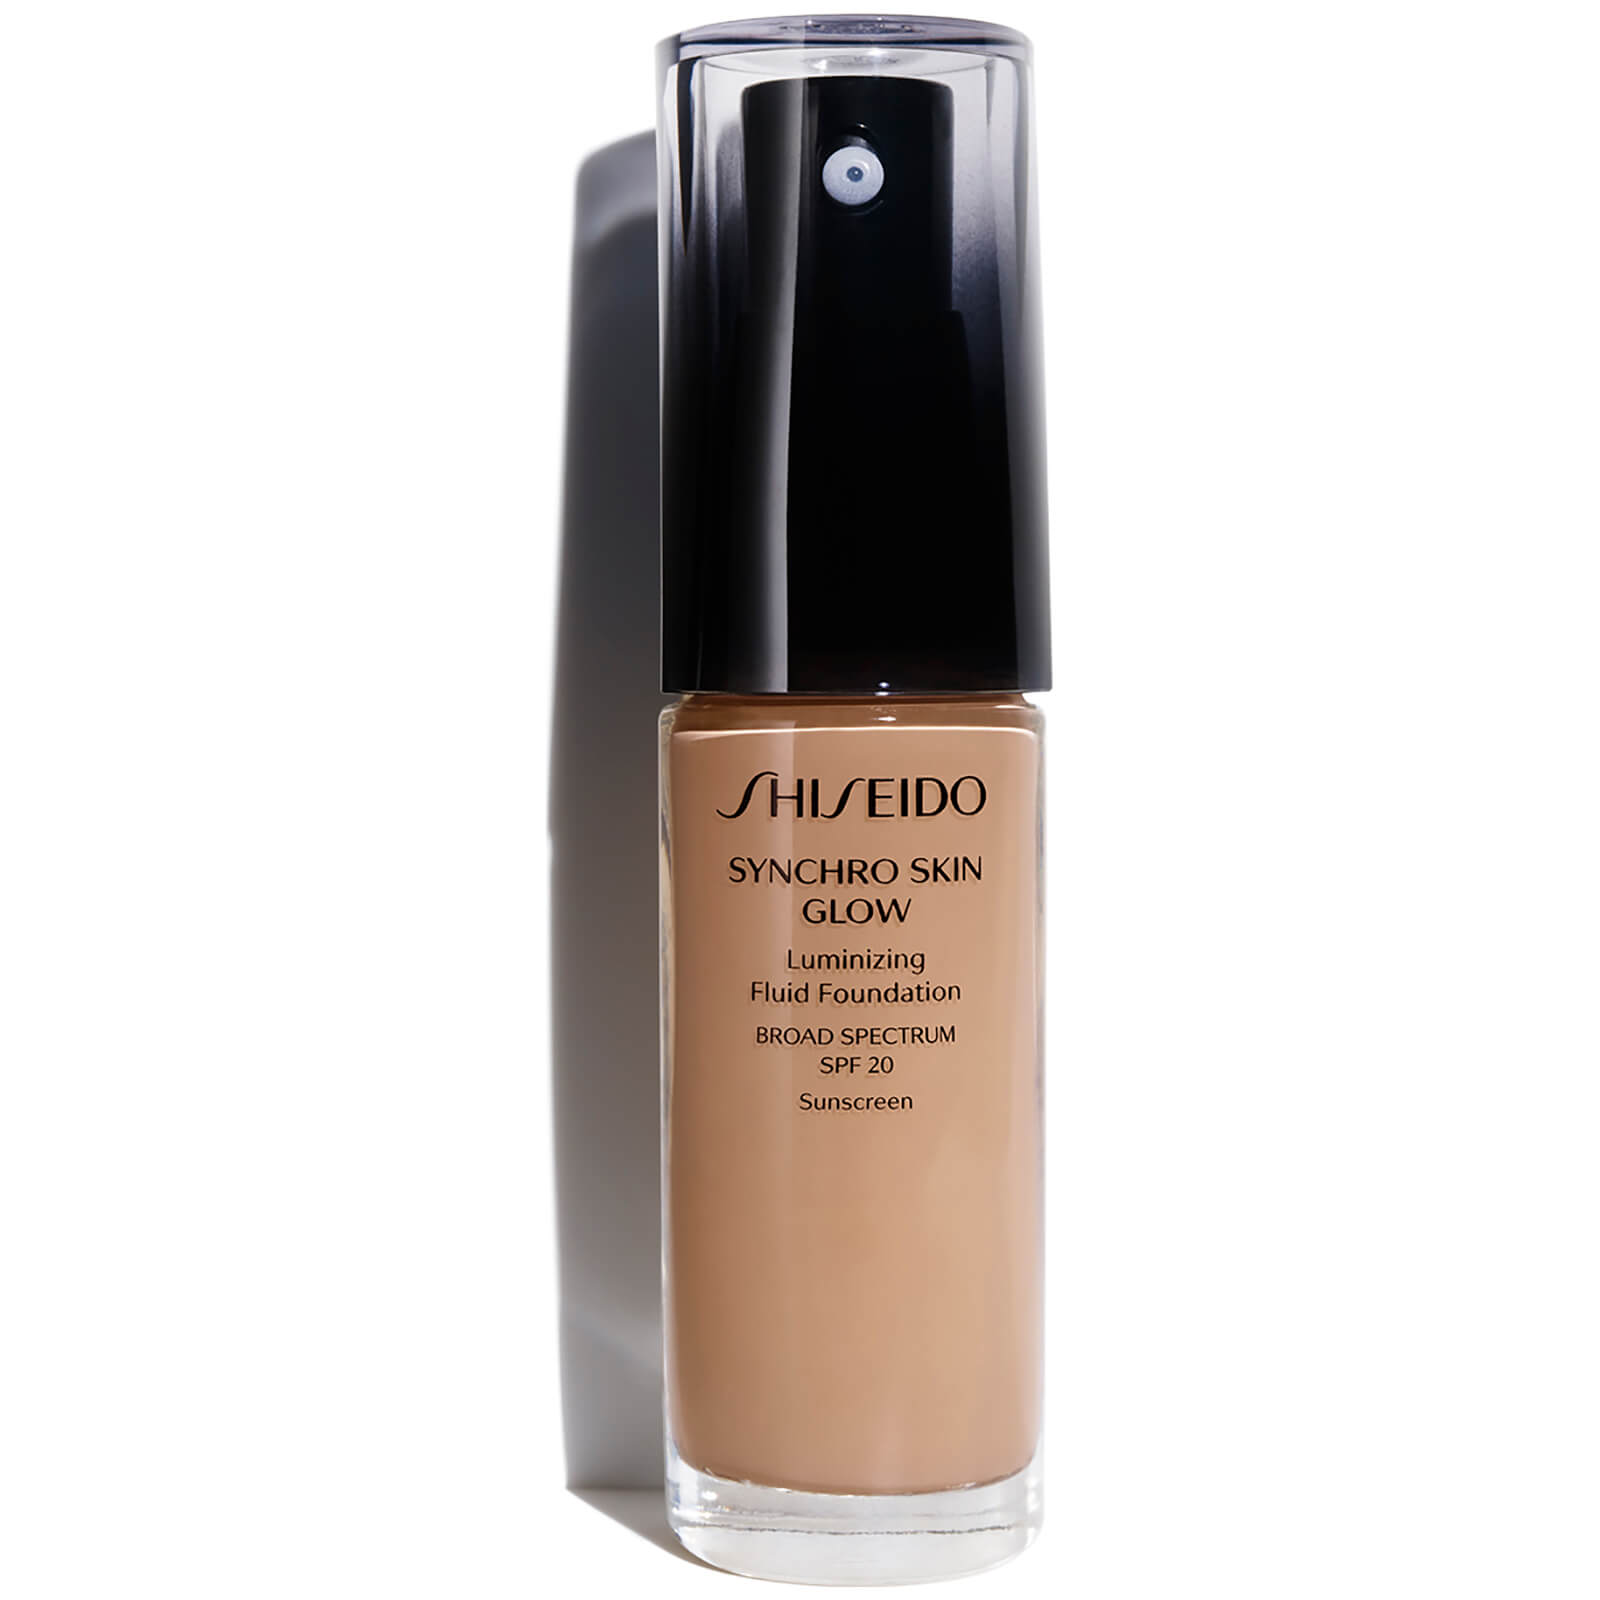 Shiseido Synchro Skin Glow Luminizing Foundation 30ml (Various Shades) - Rose 5